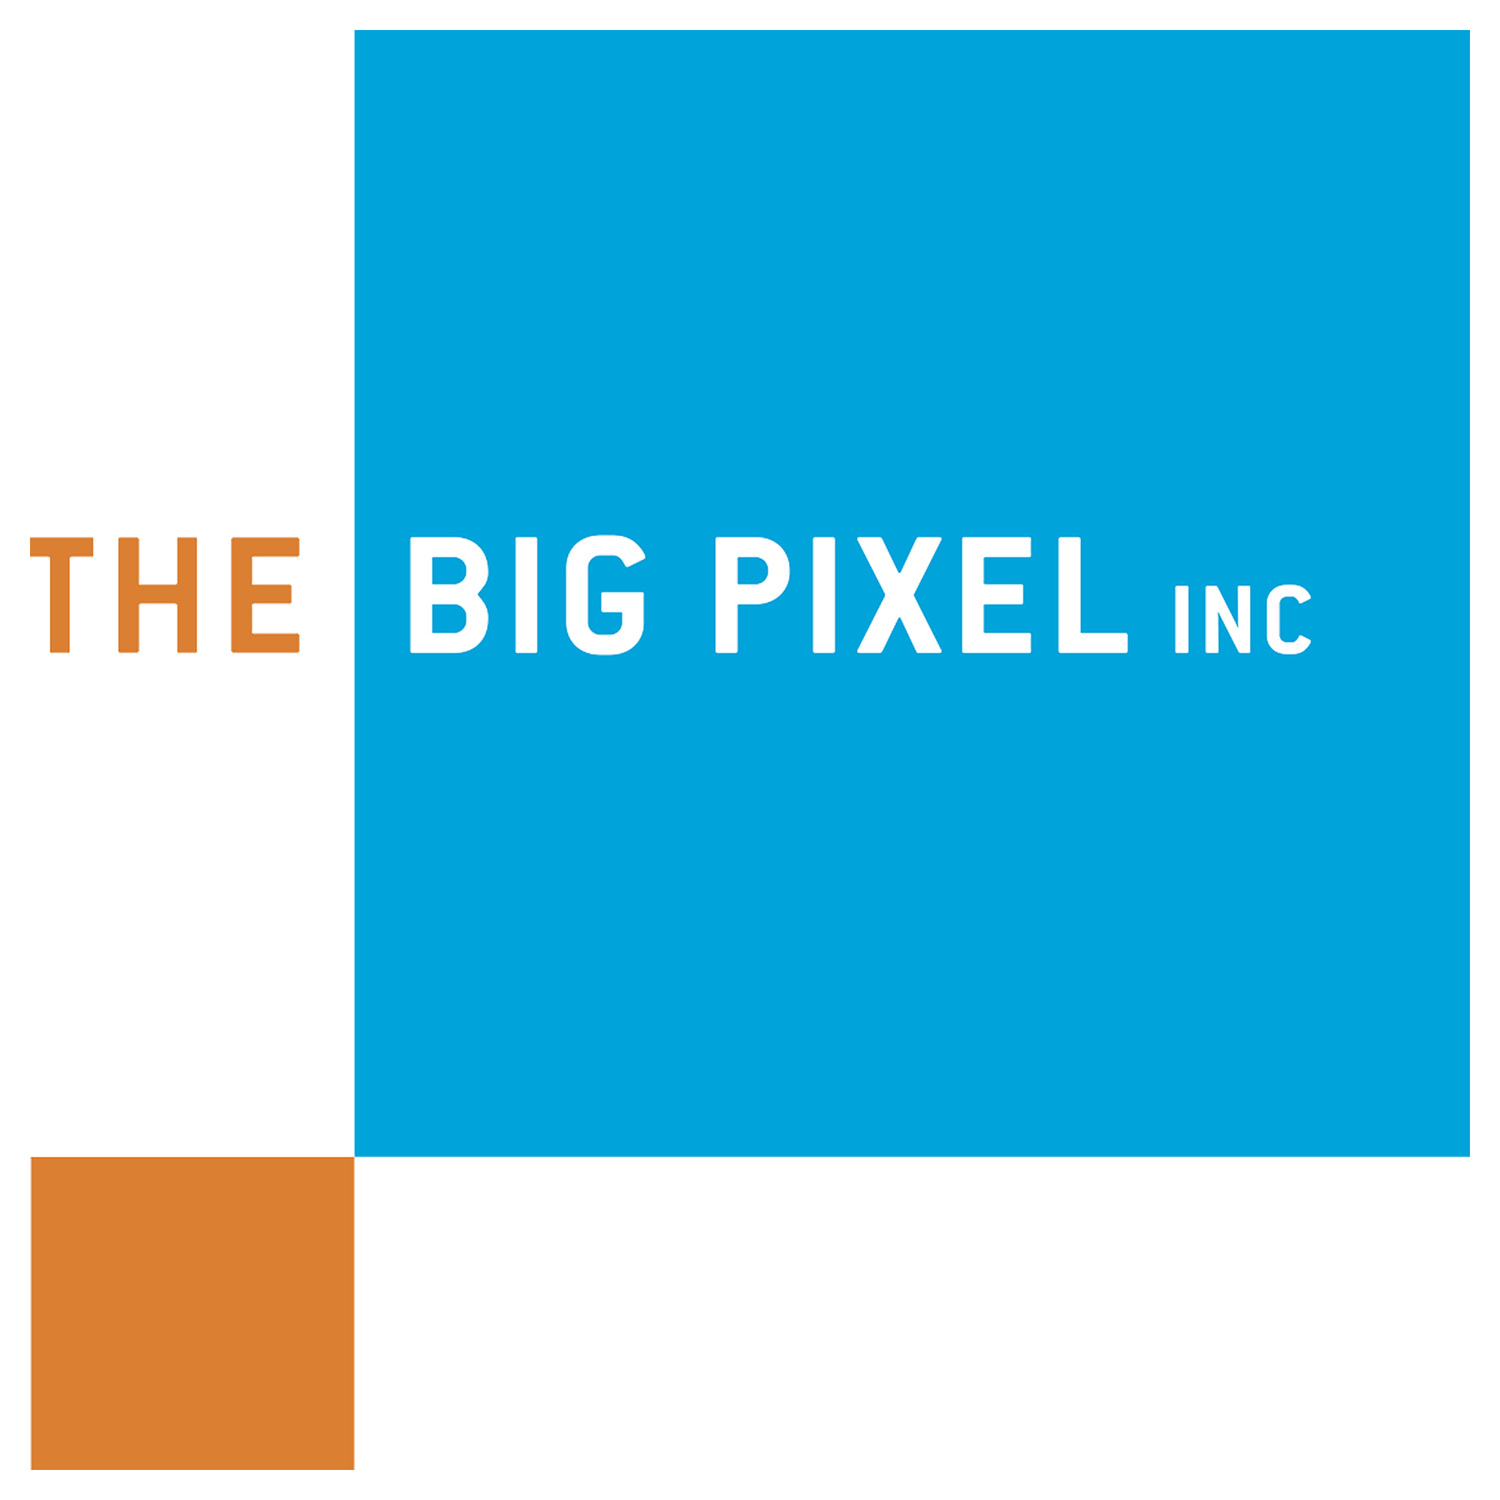 The Big Pixel Inc.